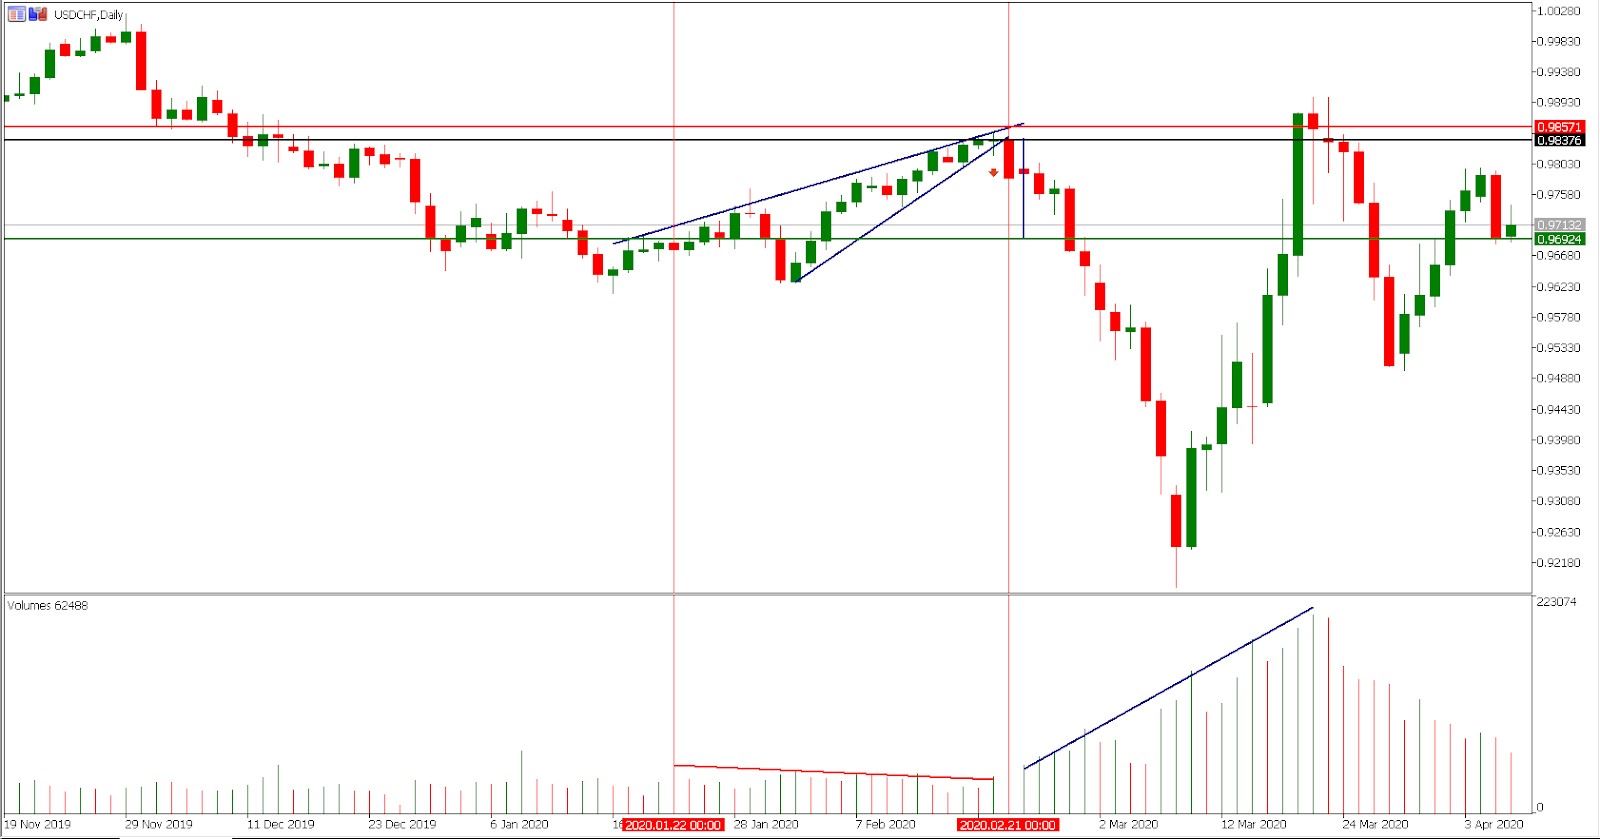 Trading rising wedge pattern